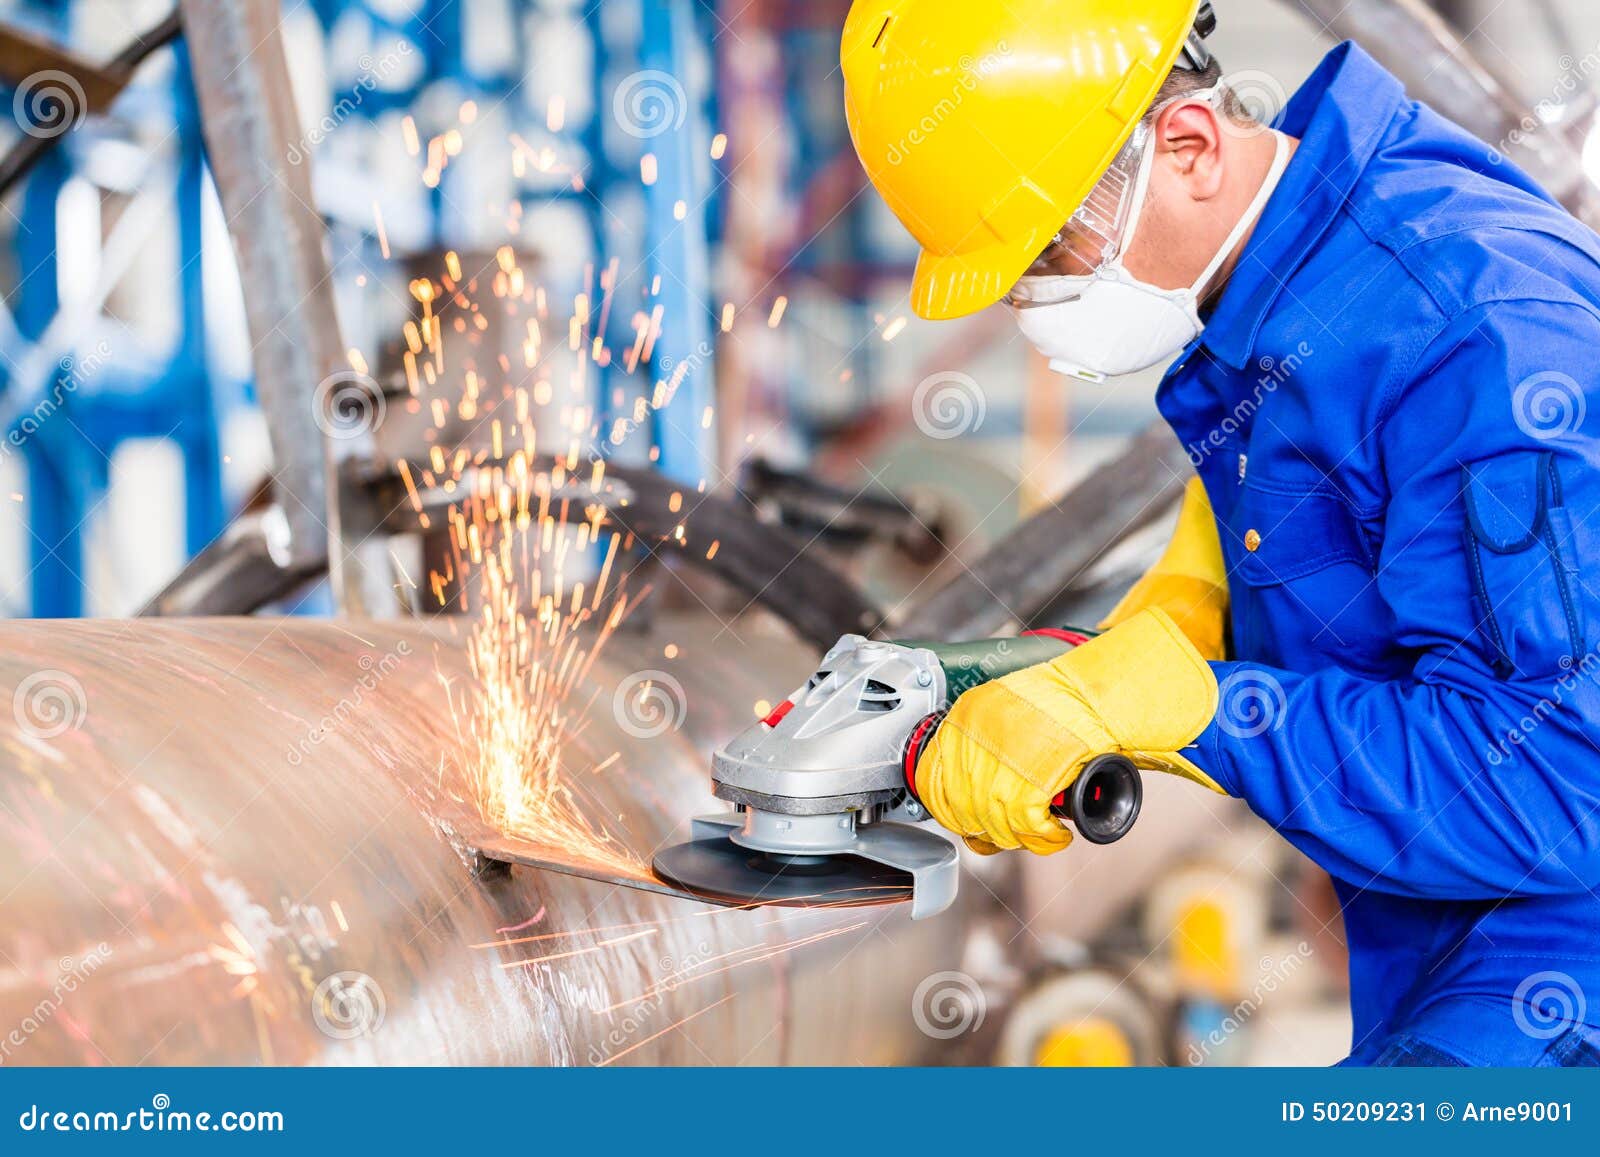 metal worker in factory grinding metal of pipeline